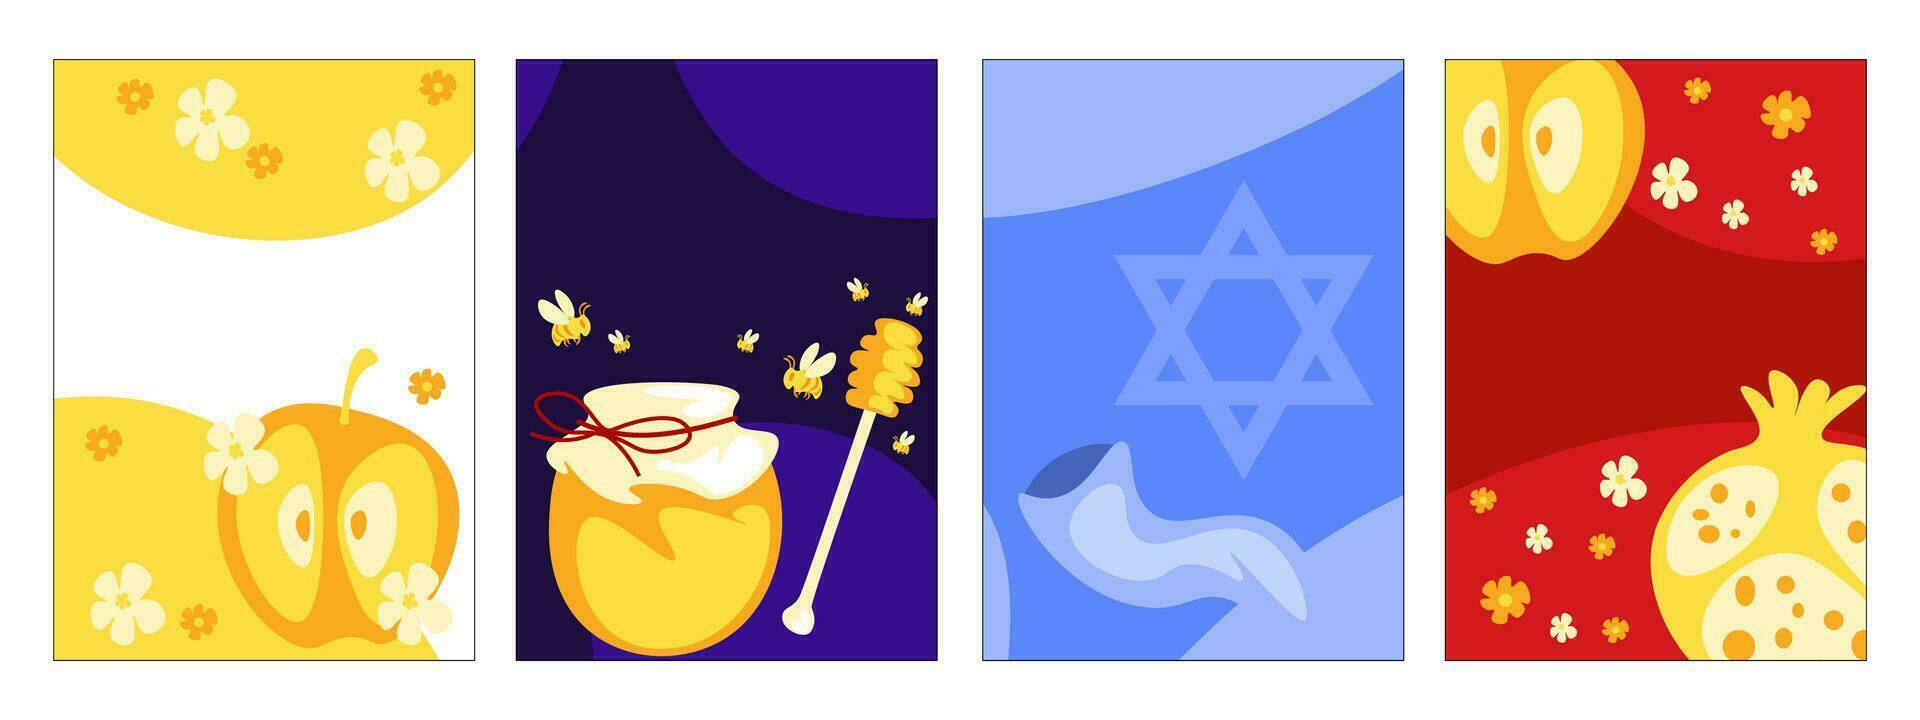 reeks van creatief concept Rosh hashanah groet kaart. granaatappel, honing, appel, bloem illustratie. modieus Joods poster vector